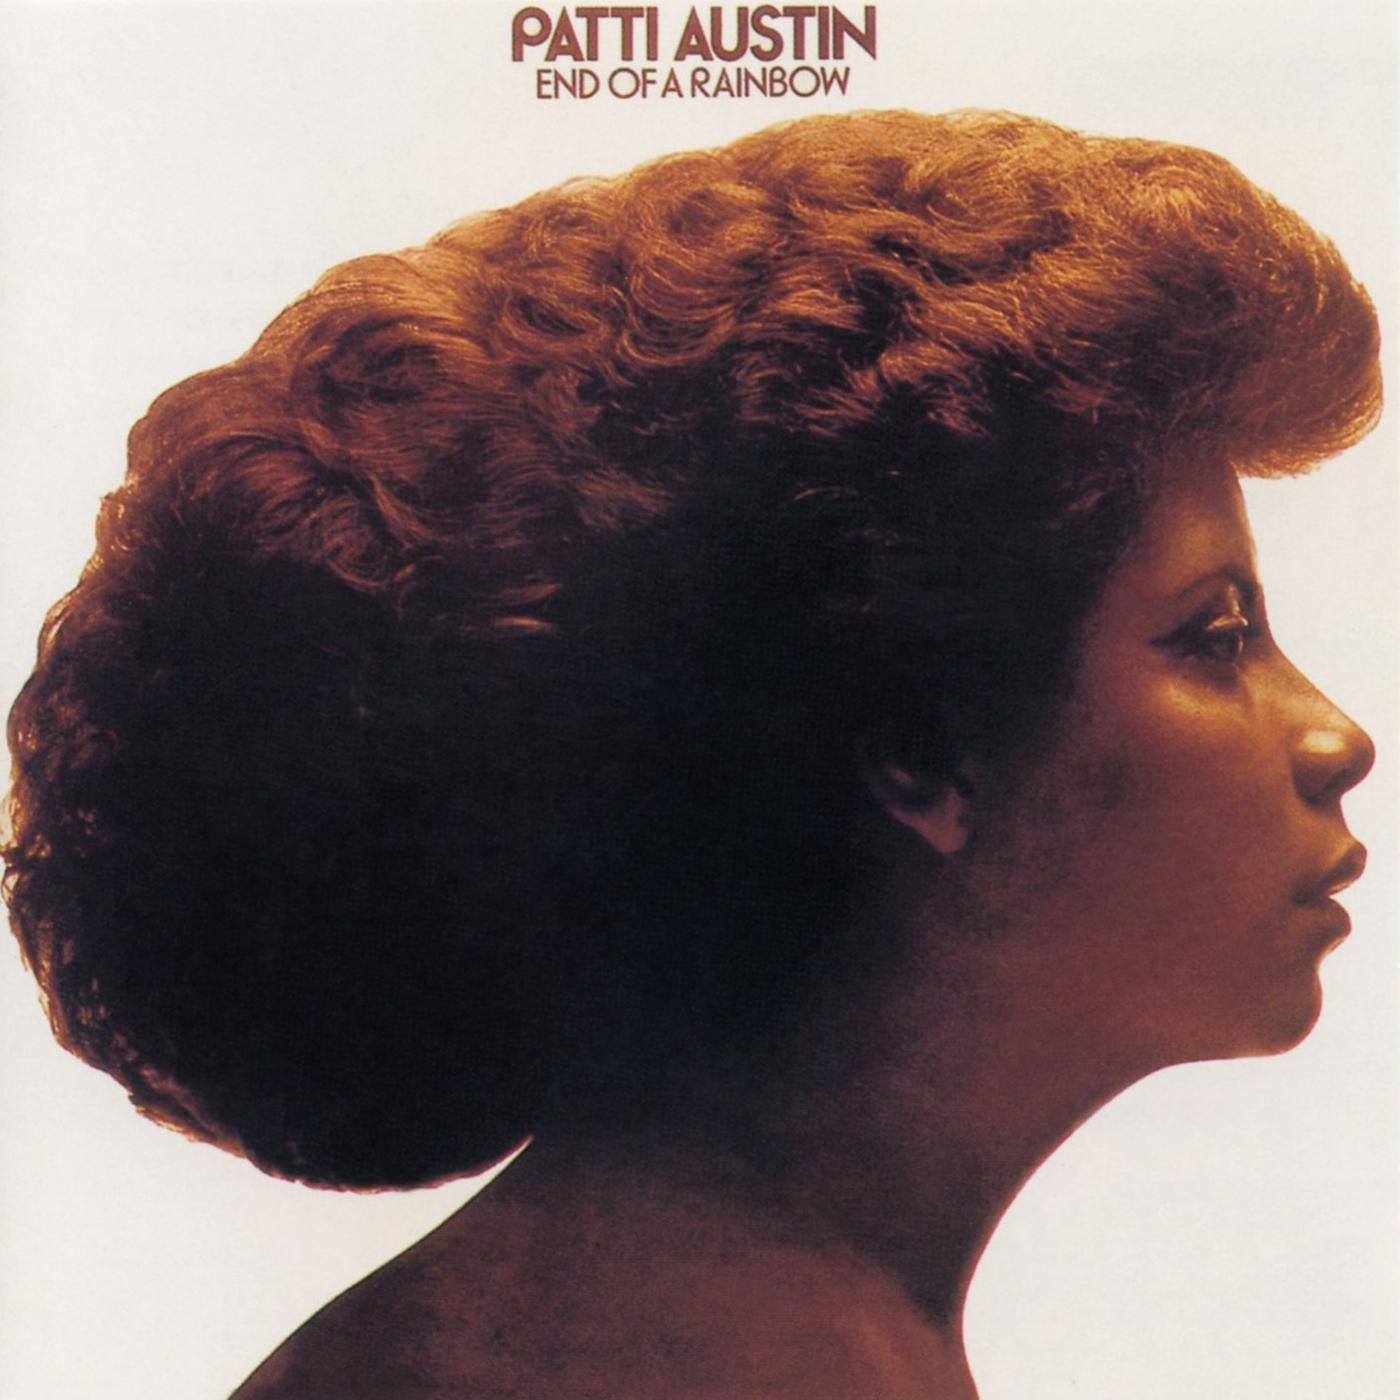 Patti Austin - Say You Love Me